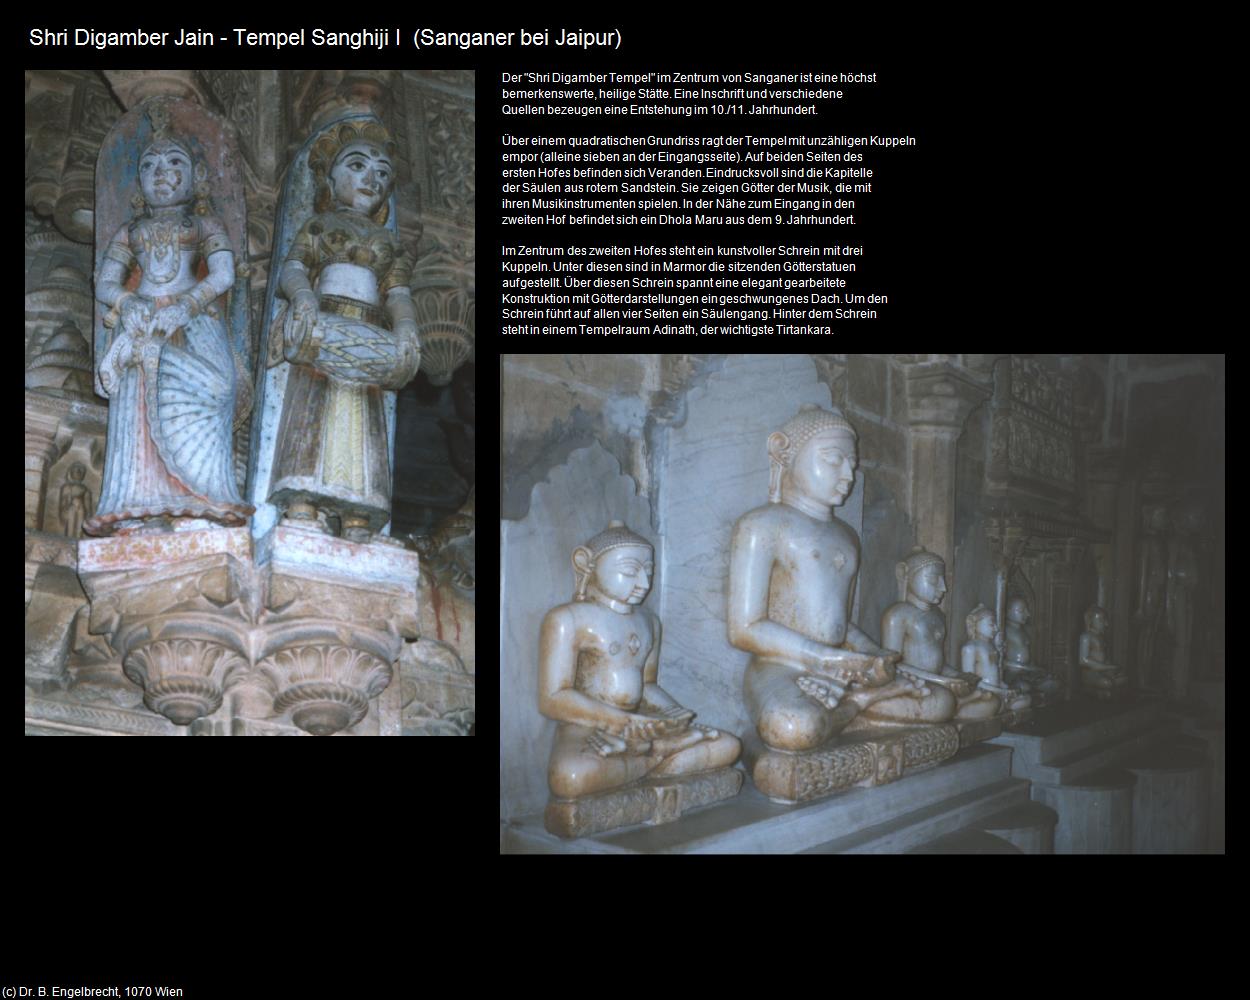 Shri Digamber Tempel I (Sanganer bei Jaipur) in Rajasthan - das Land der Könige